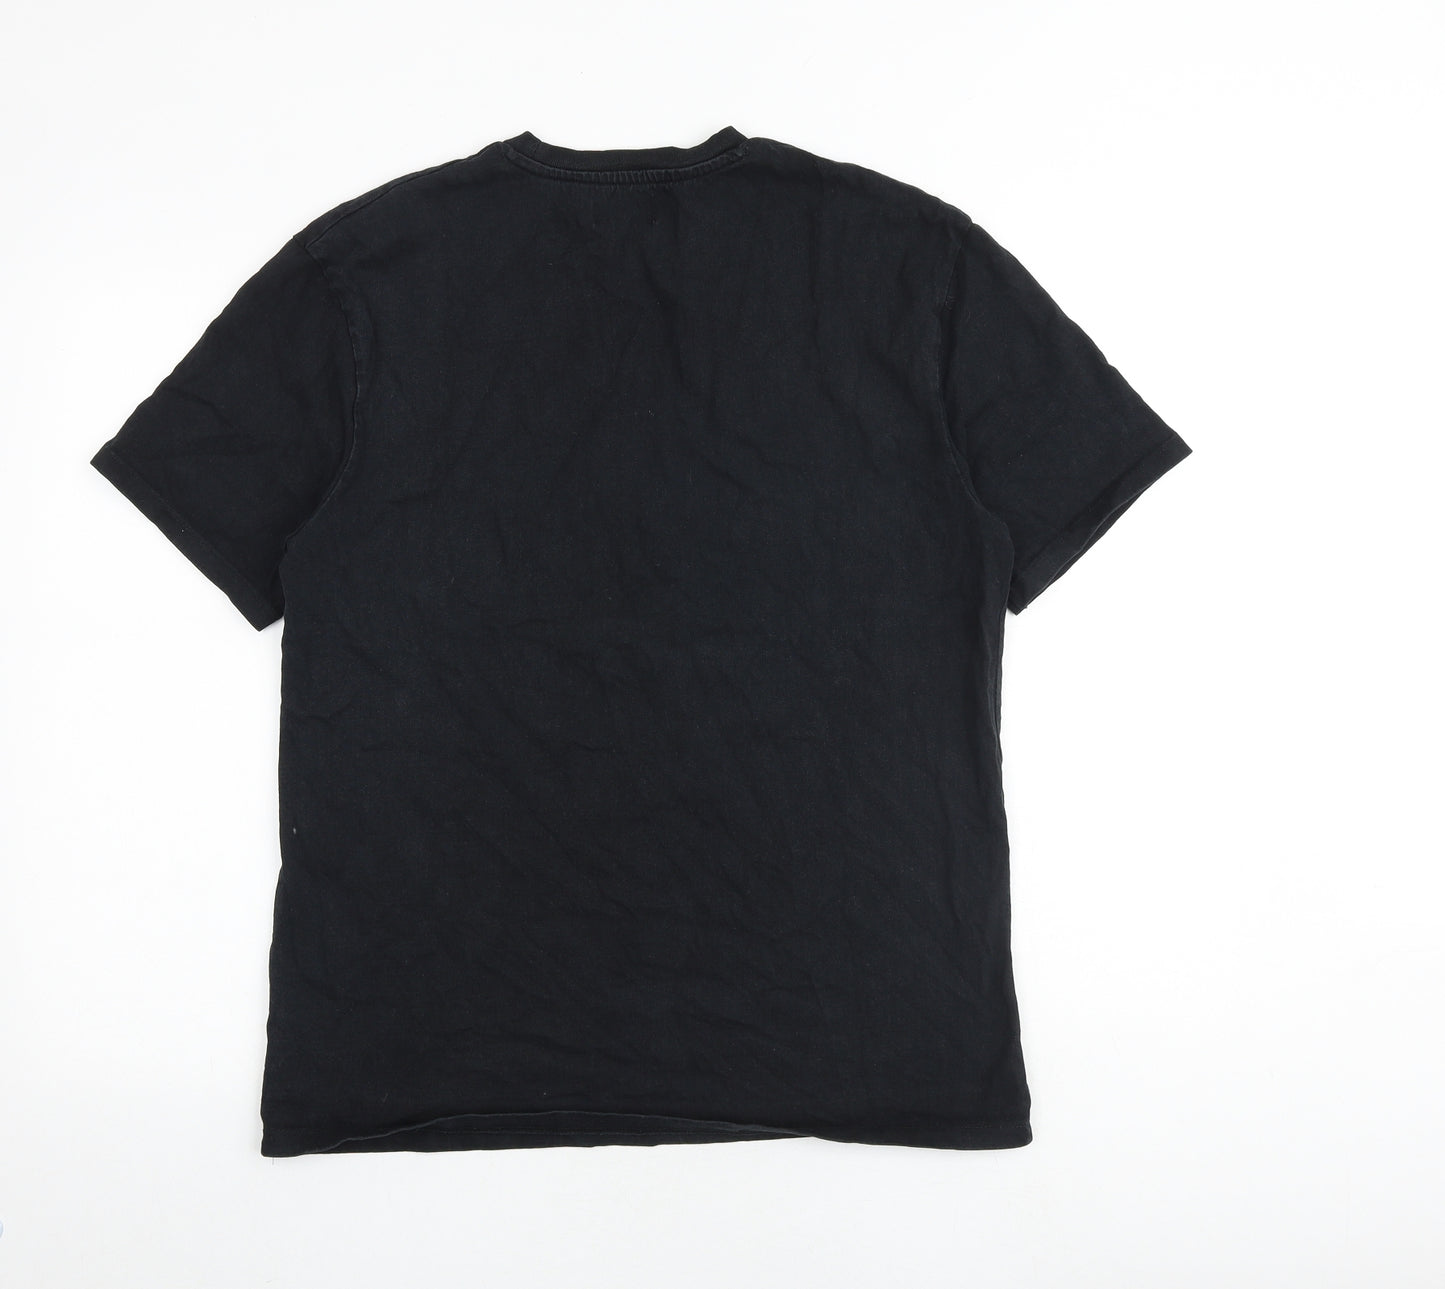 Topman Mens Black Cotton T-Shirt Size S Round Neck